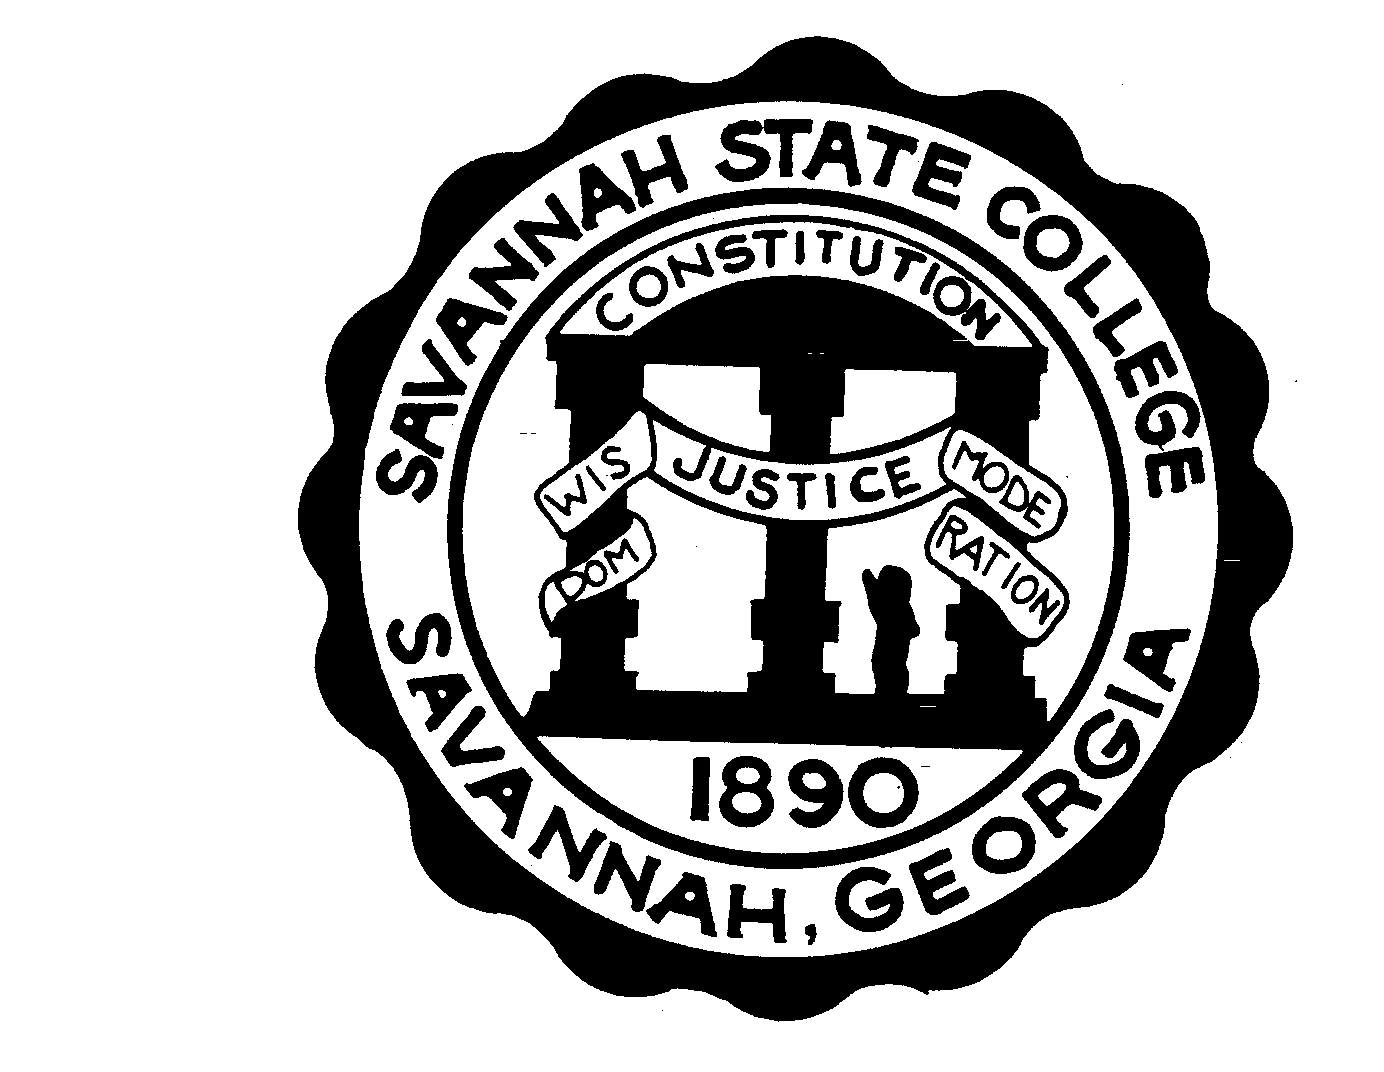  SAVANNAH STATE COLLEGE SAVANNAH, GEORGIA 1890